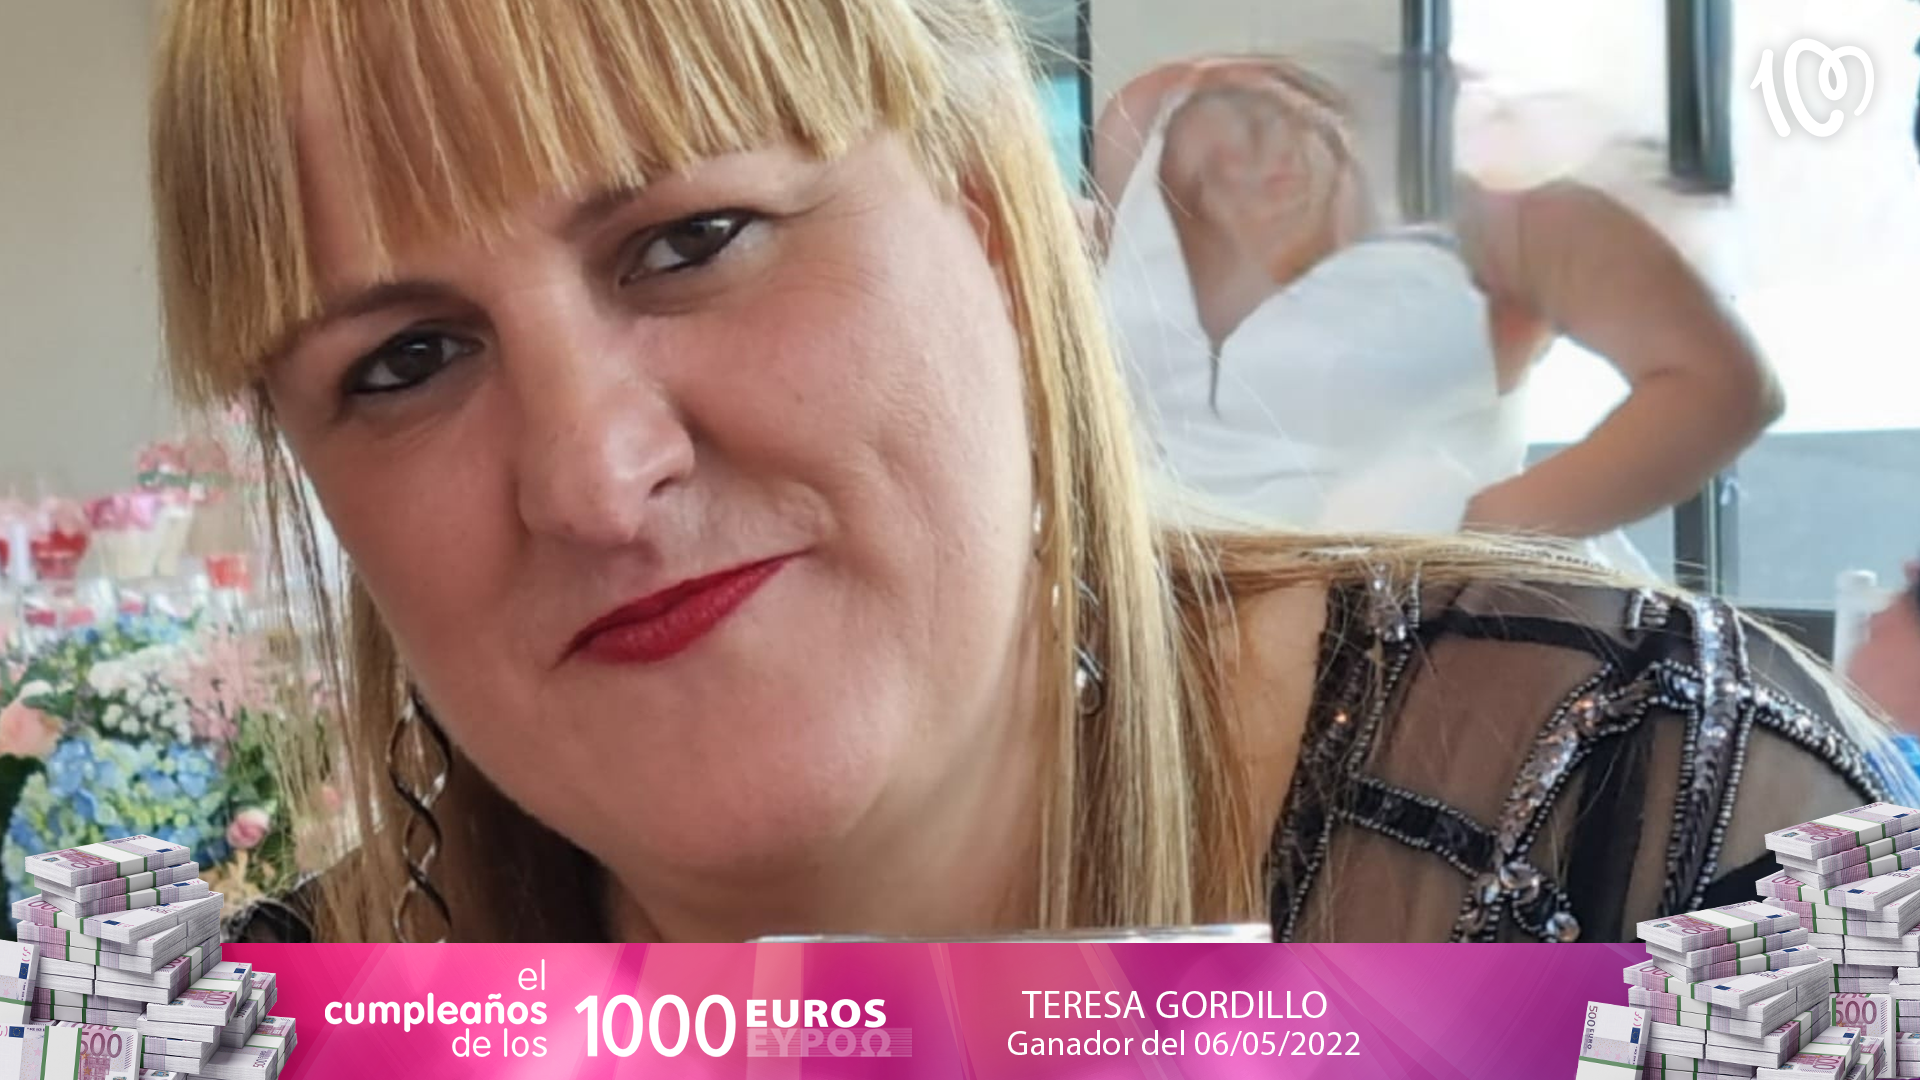 Teresa ha ganado 2.000 euros: "¡Con tan solo una llamada!"